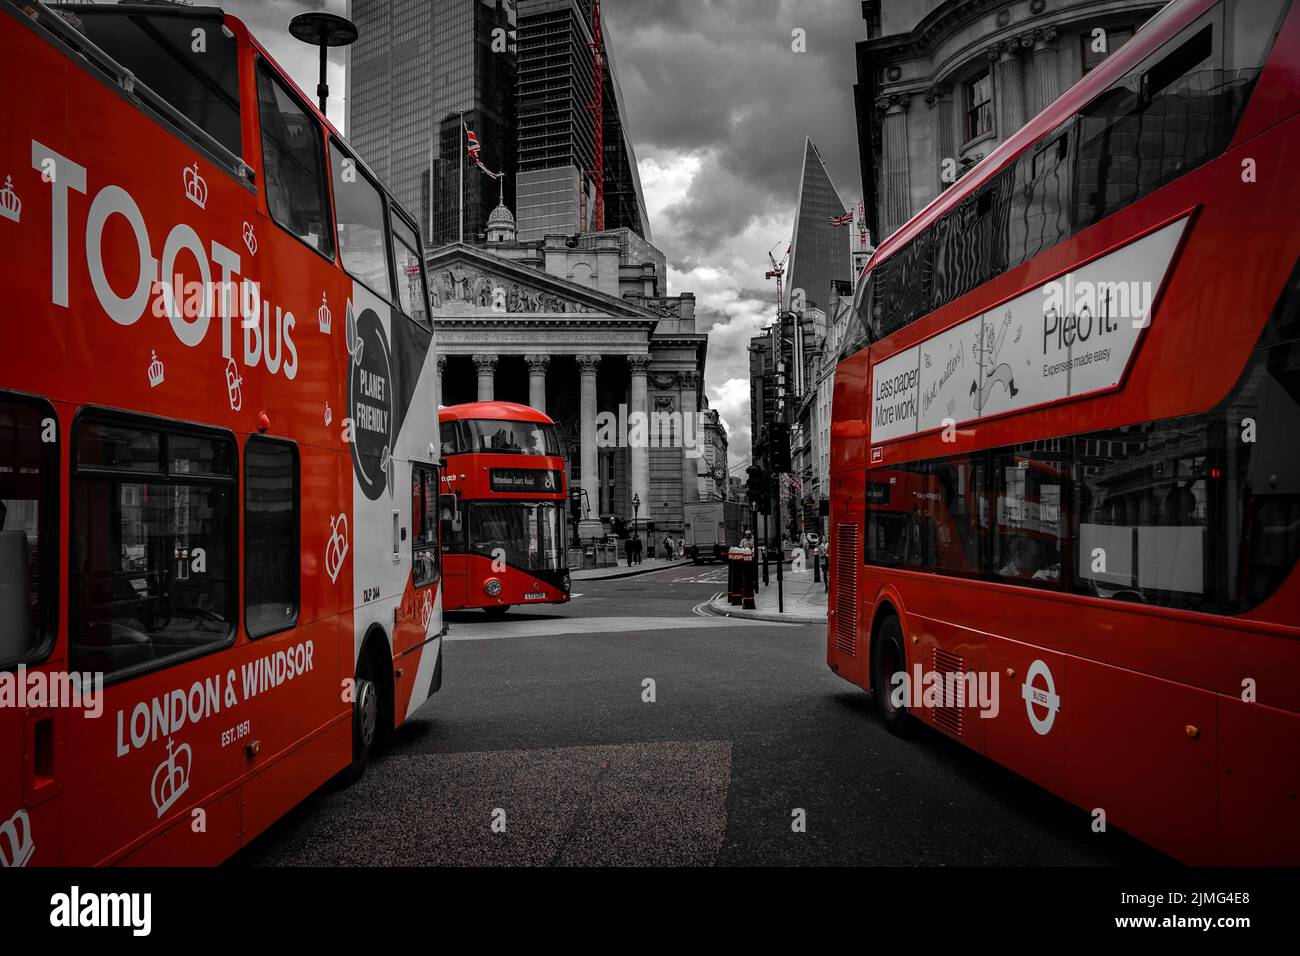 Tre autobus a due piani rossi si incontrano all'incrocio di Bank Station, Londra; colore rosso selettivo della carta da parati a due piani di Londra Foto Stock